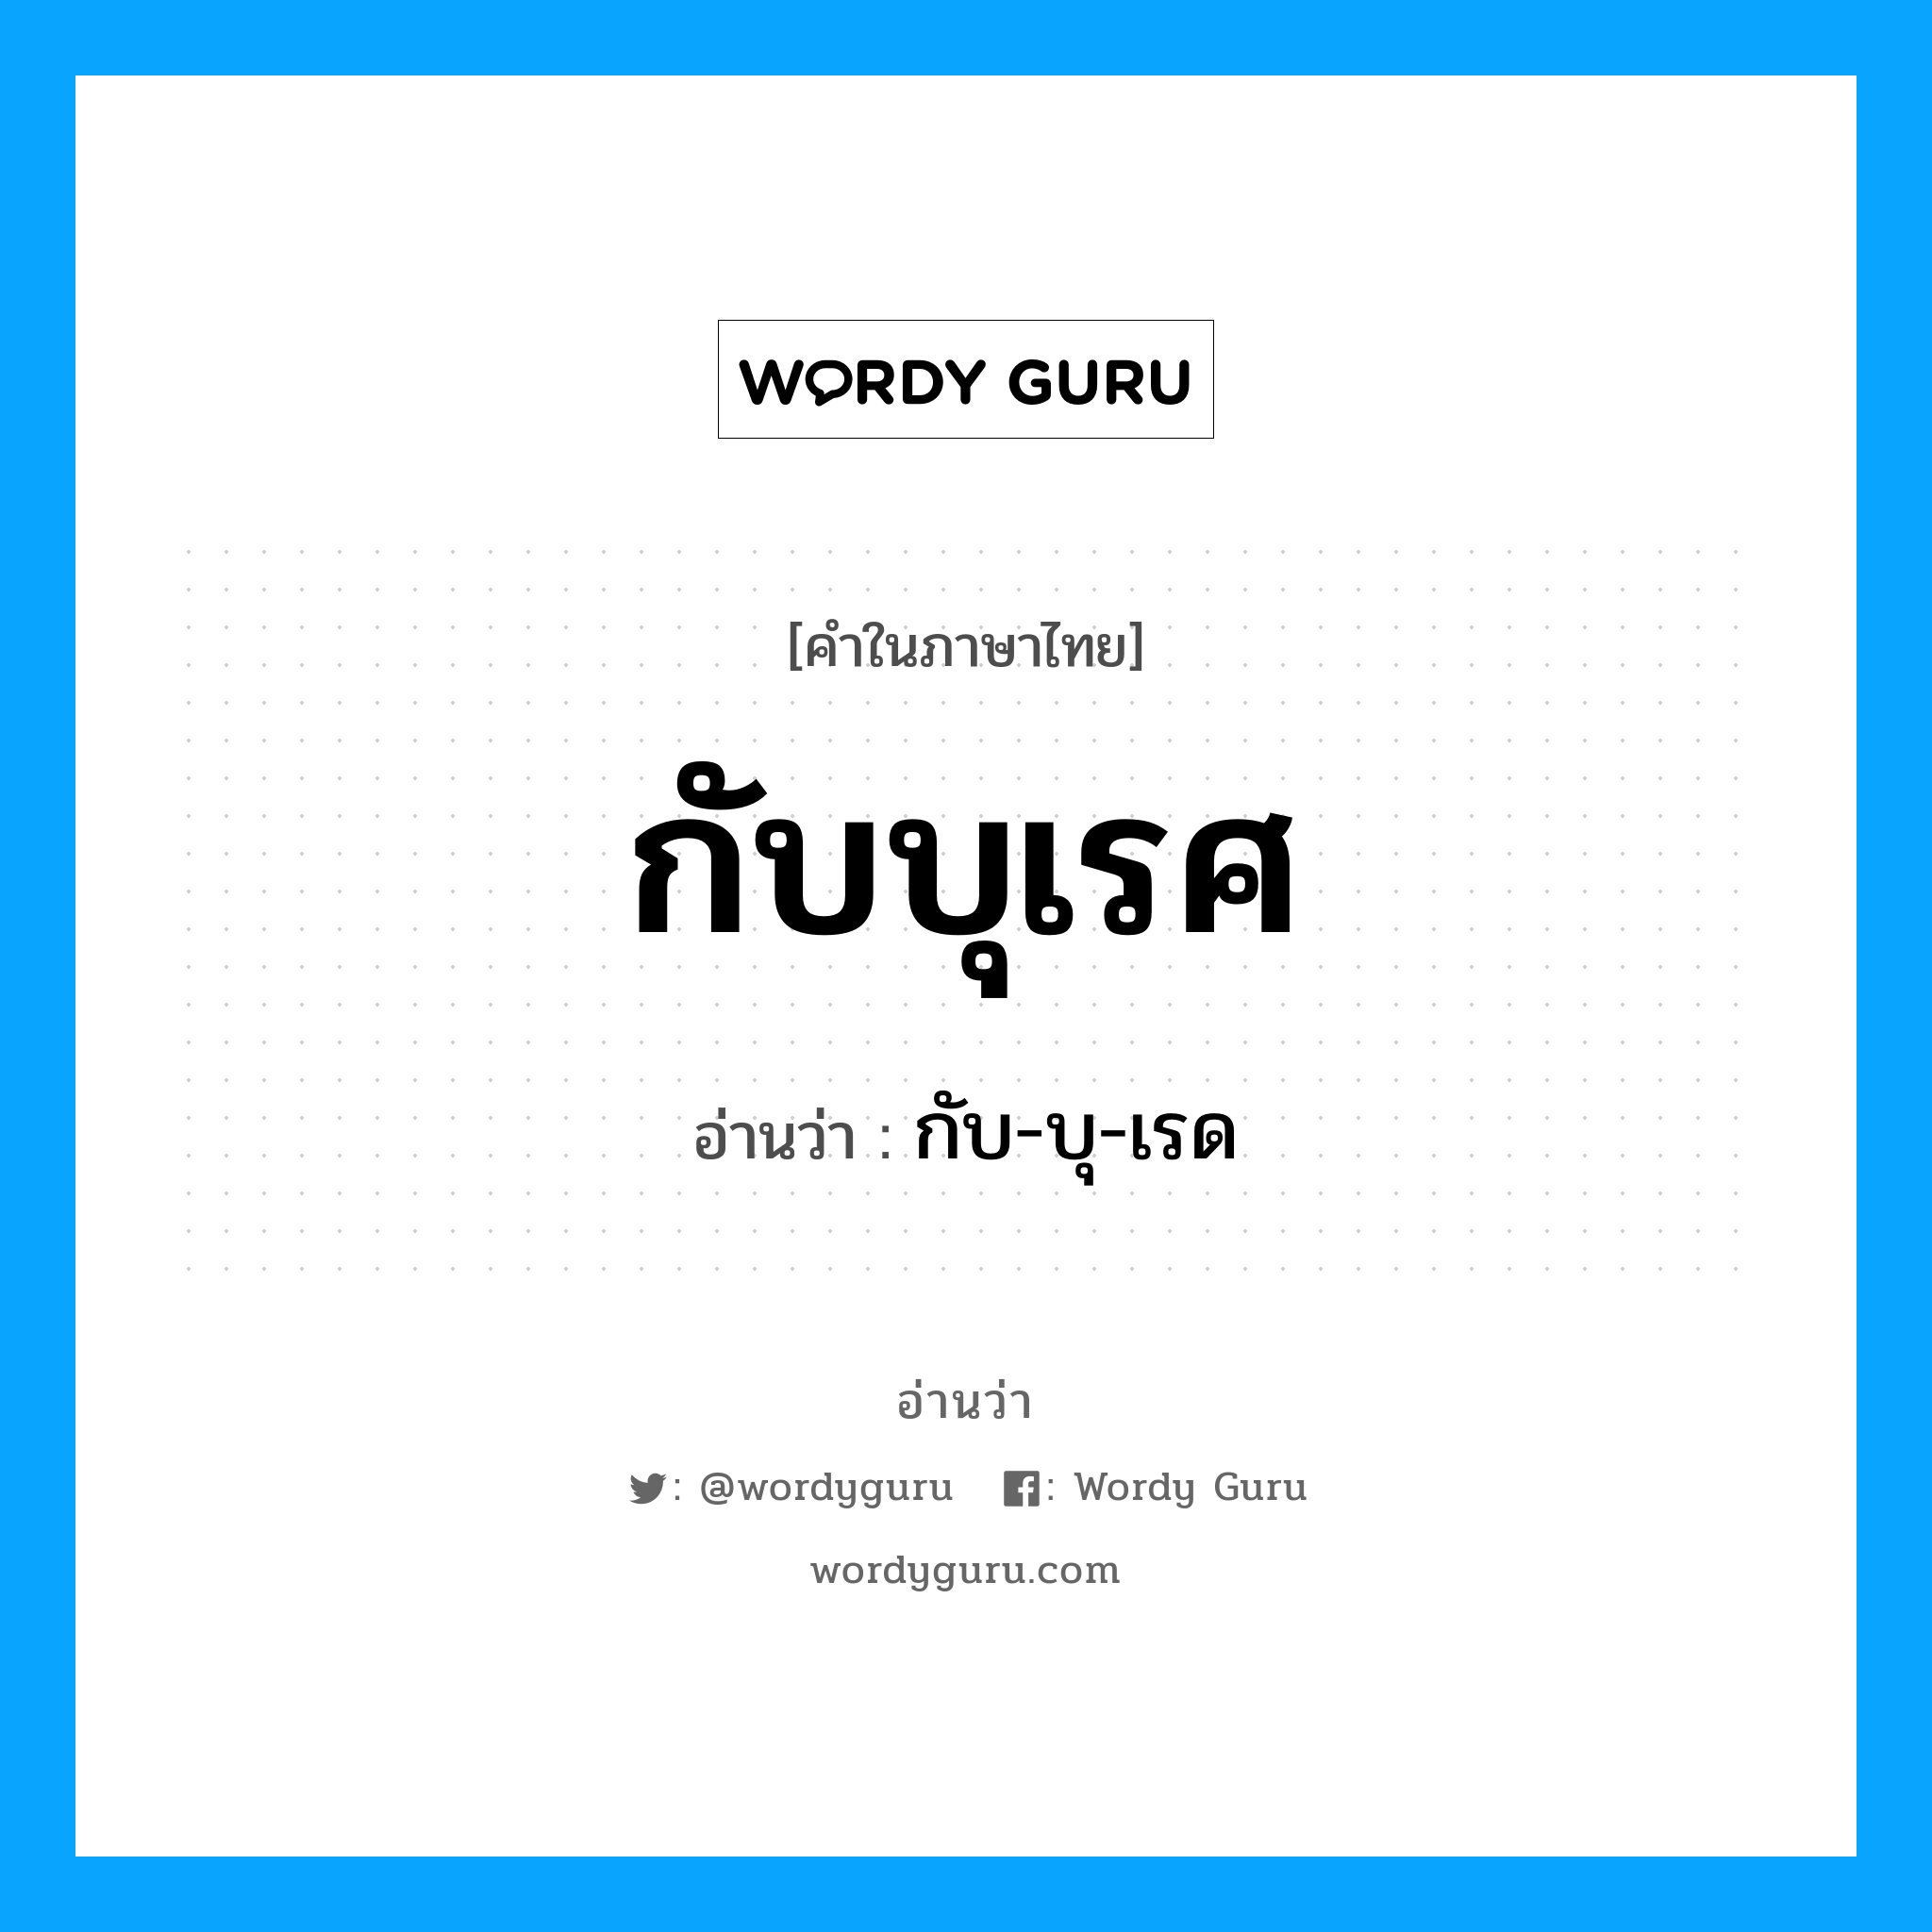 กับ-บุ-เรด เป็นคำอ่านของคำไหน?, คำในภาษาไทย กับ-บุ-เรด อ่านว่า กับบุเรศ